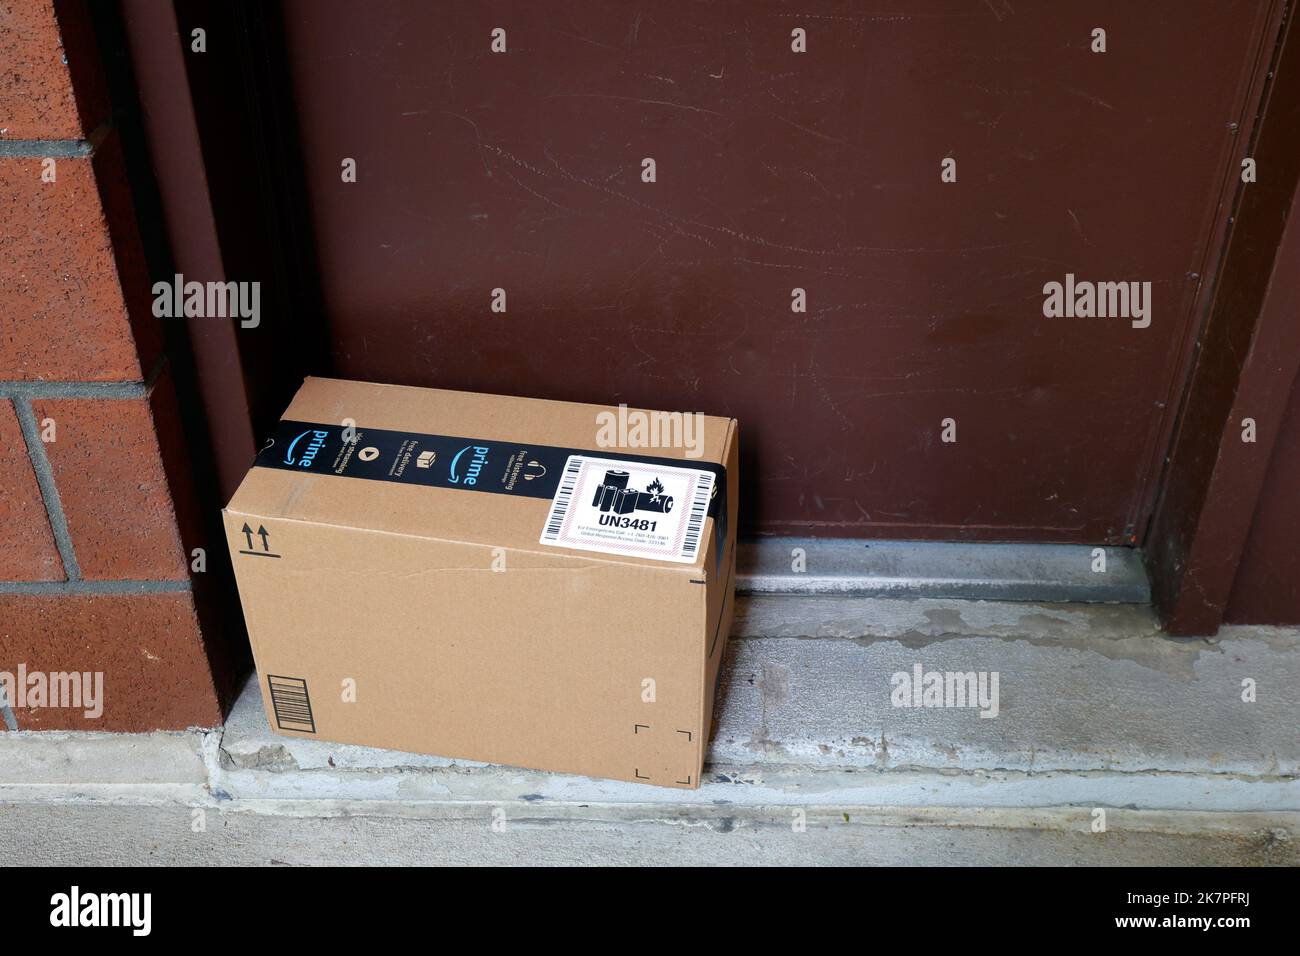 Une livraison Amazon laissée à la porte. Un autocollant un 3481 sur la boîte en carton indiquant le contenu contenant des batteries lithium-ion Banque D'Images